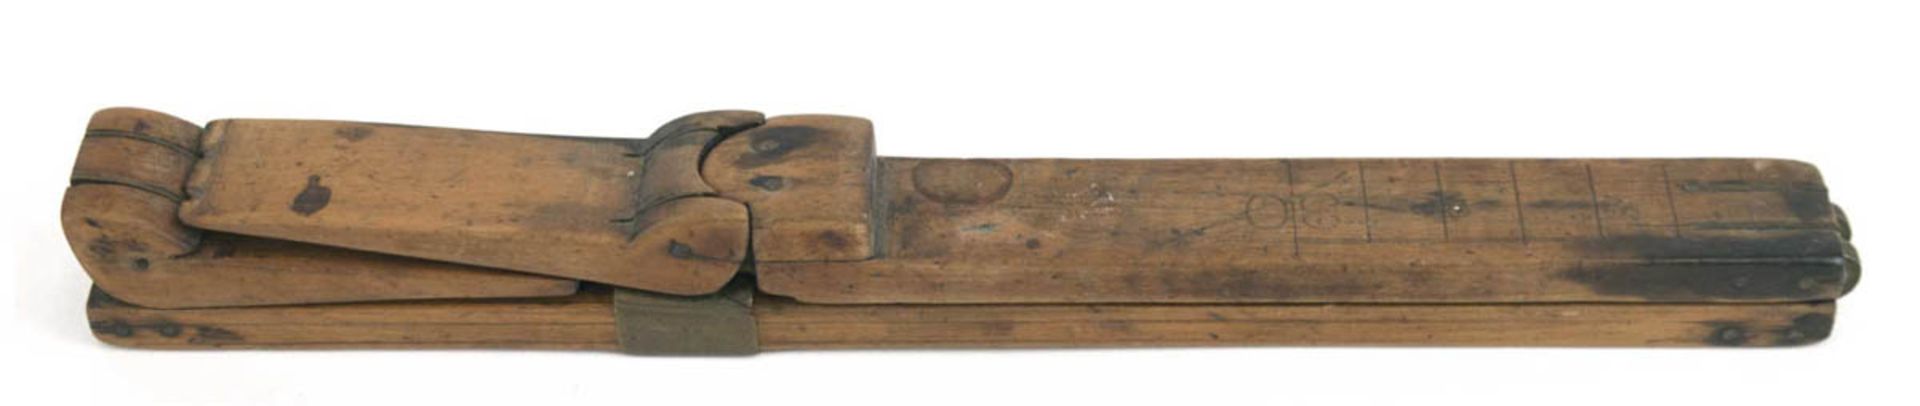 Messgerät, Mitte 19. Jh., ausklappbare Holzleiste mit Maßeinteilung, ausklappbareAbstandhalter,